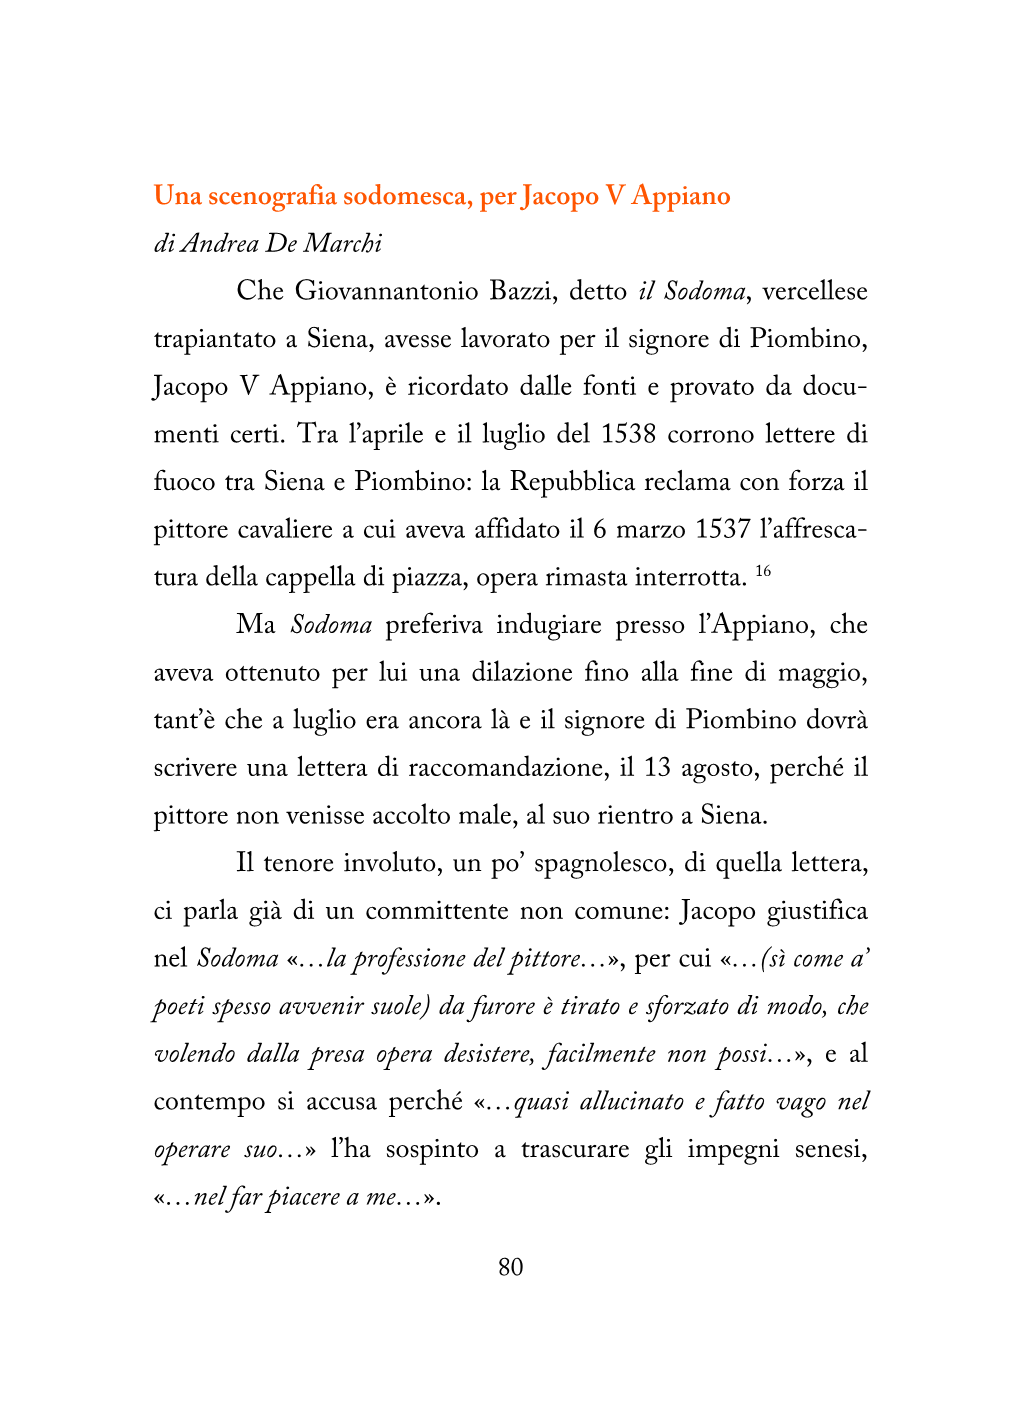 Una Scenografia Sodomesca, Per Jacopo V Appiano Di Andrea De Marchi Che Giovannantonio Bazzi, Detto Il Sodoma, Vercellese Trapia